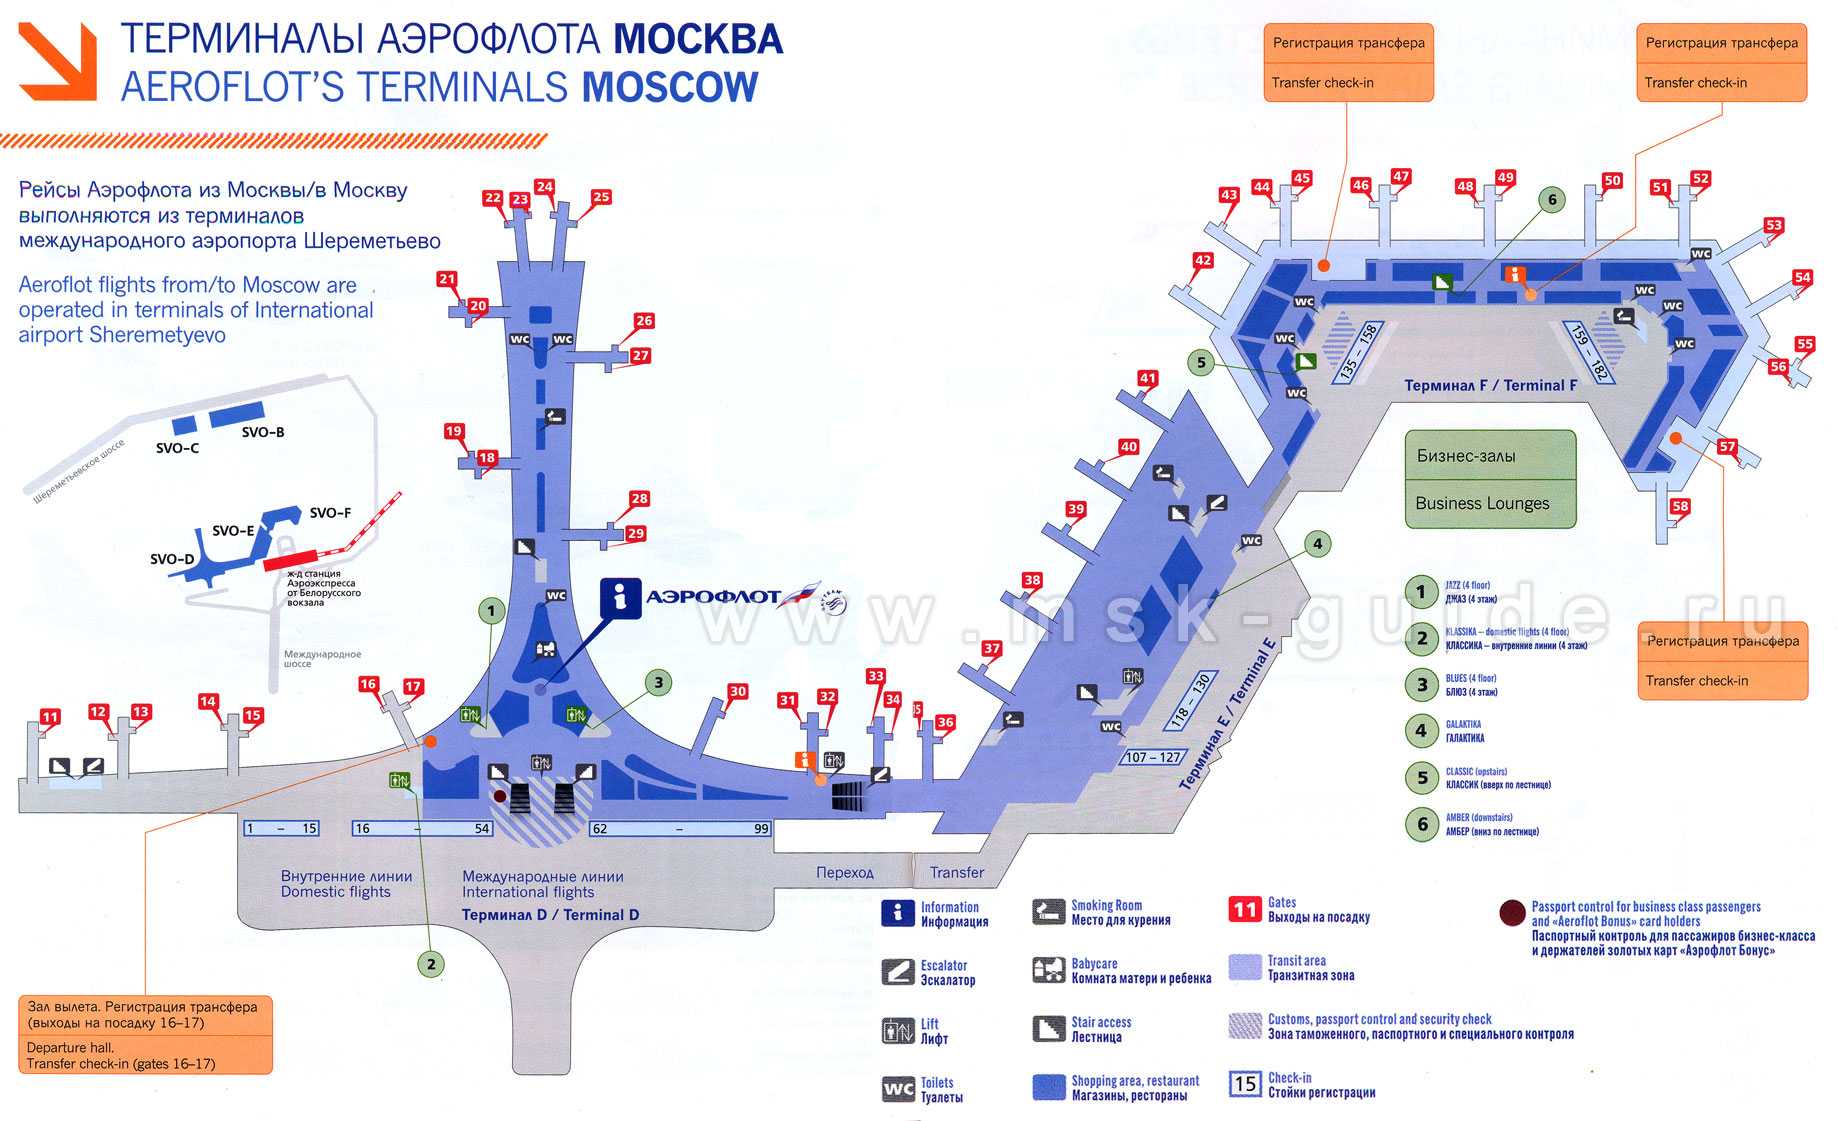 Список городов ставропольского края с аэропортами